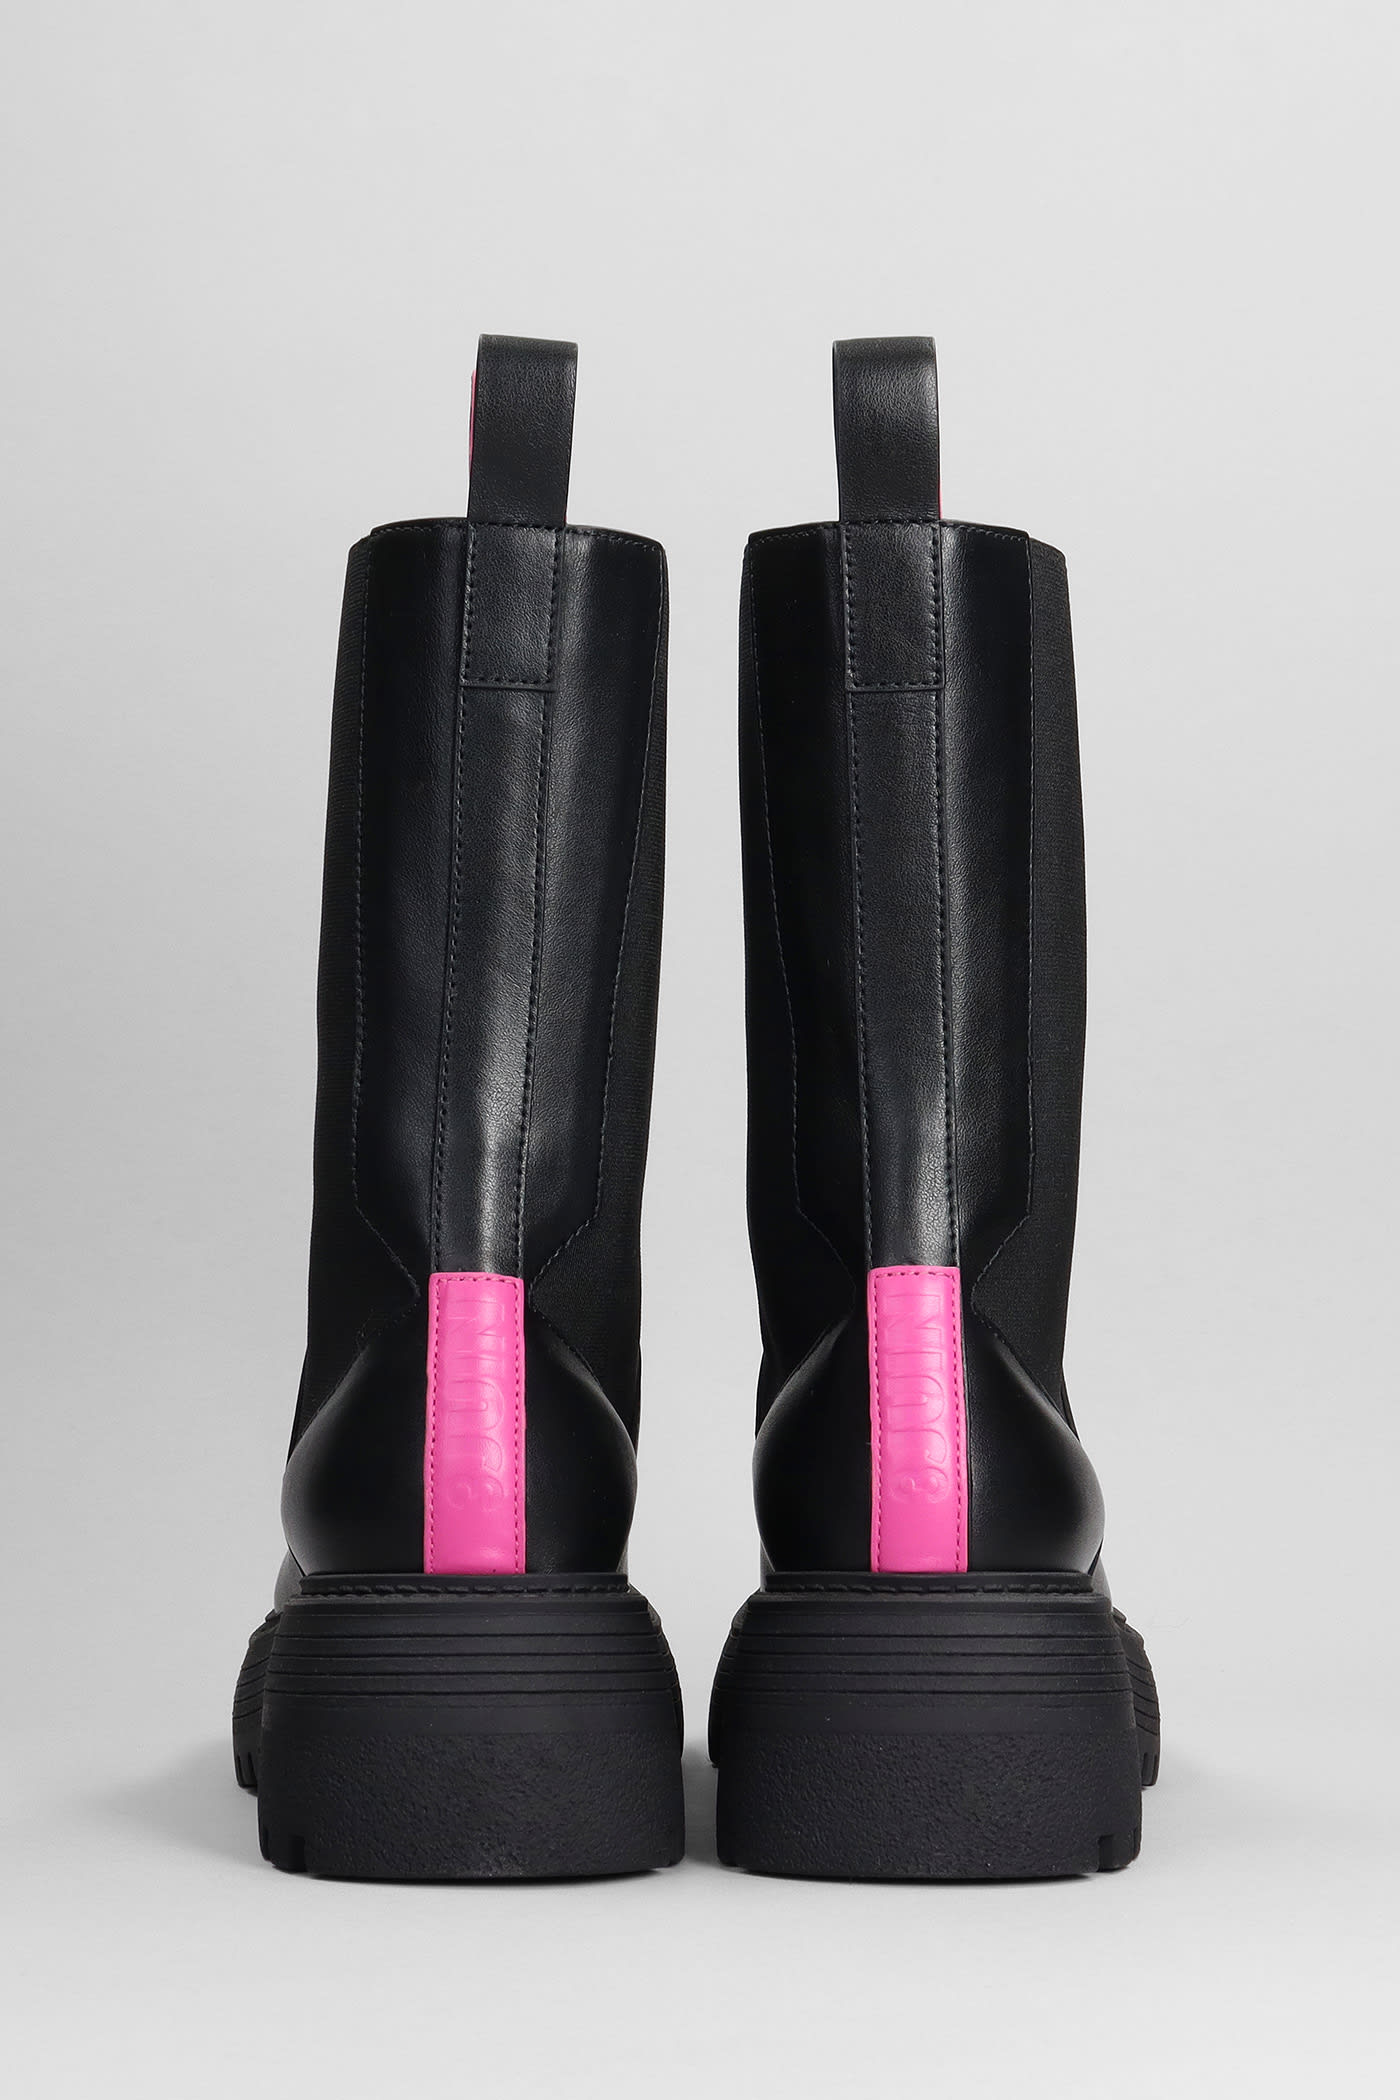 Louis Vuitton Bag & Combat Boots – Tokyo Fashion